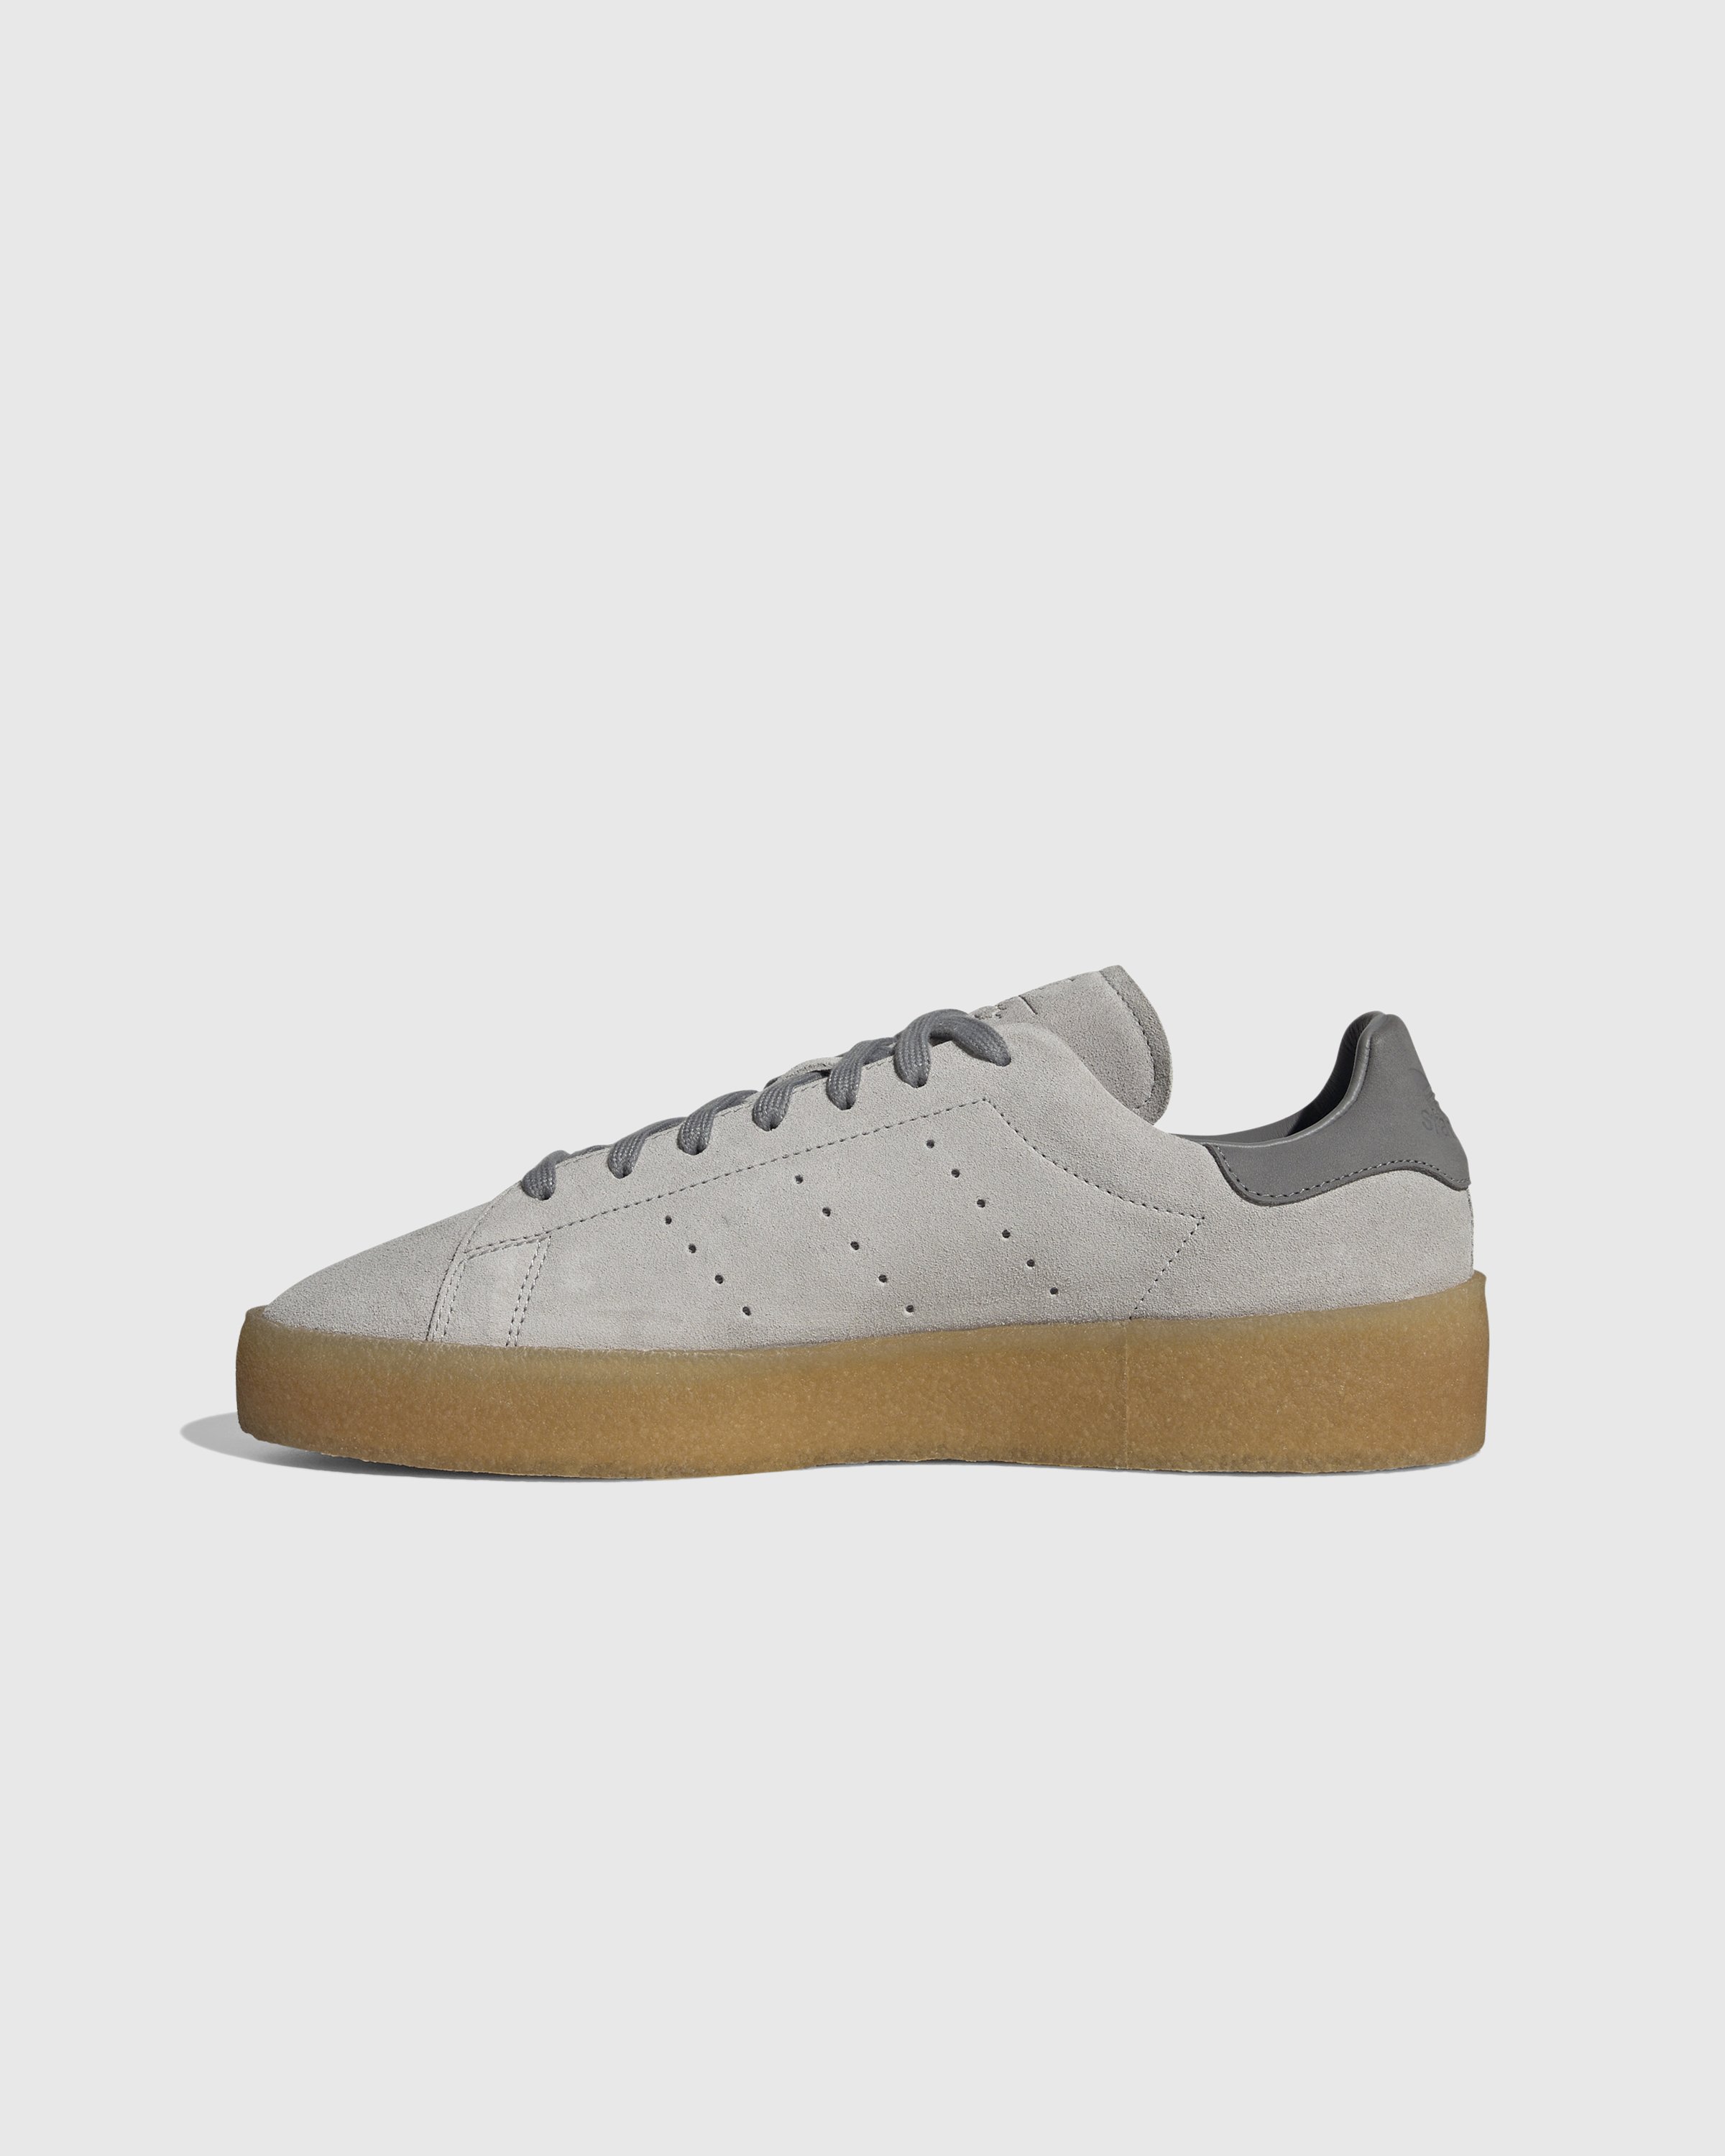 Adidas - Stan Smith Crepe Grey - Footwear - Grey - Image 2